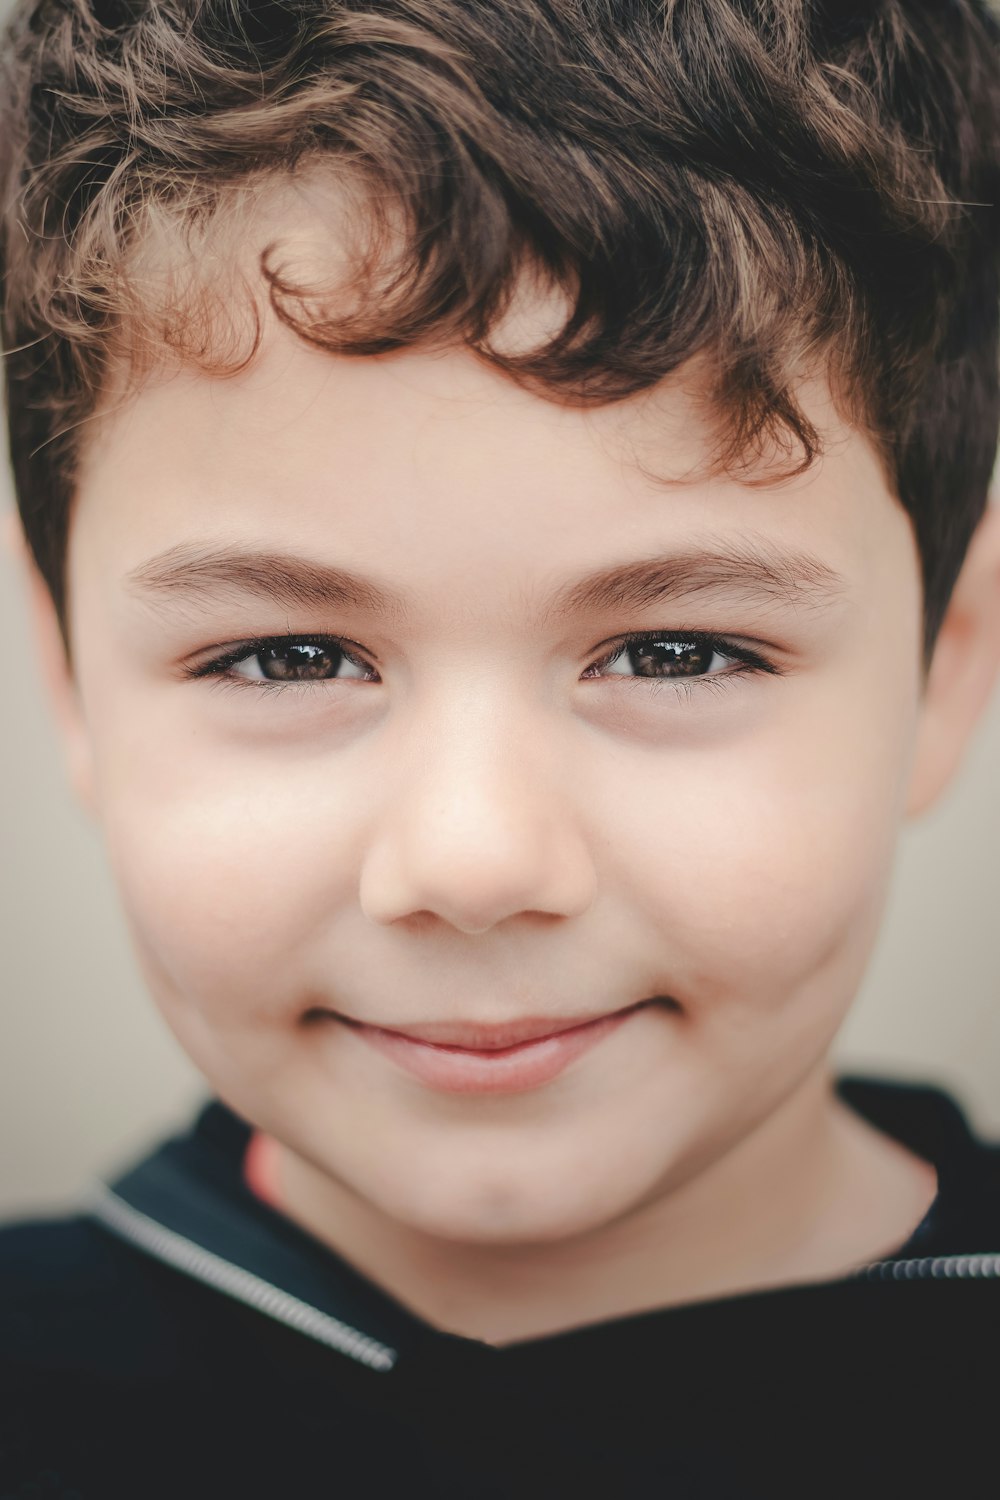 Eine Nahaufnahme des lächelnden Gesichts eines Kindes